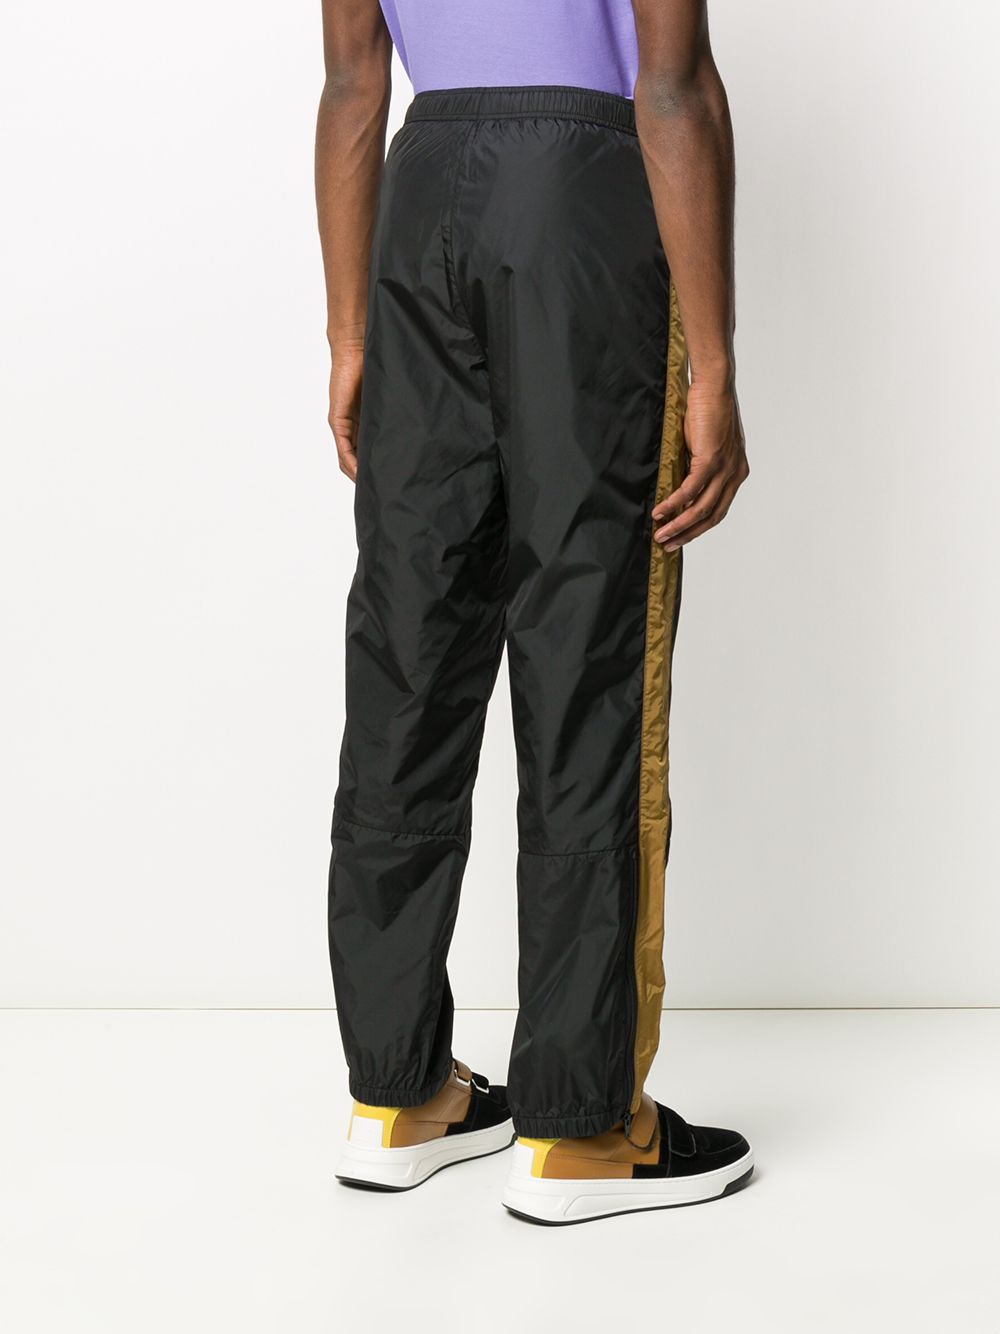 фото Acne studios спортивные брюки с контрастными полосками